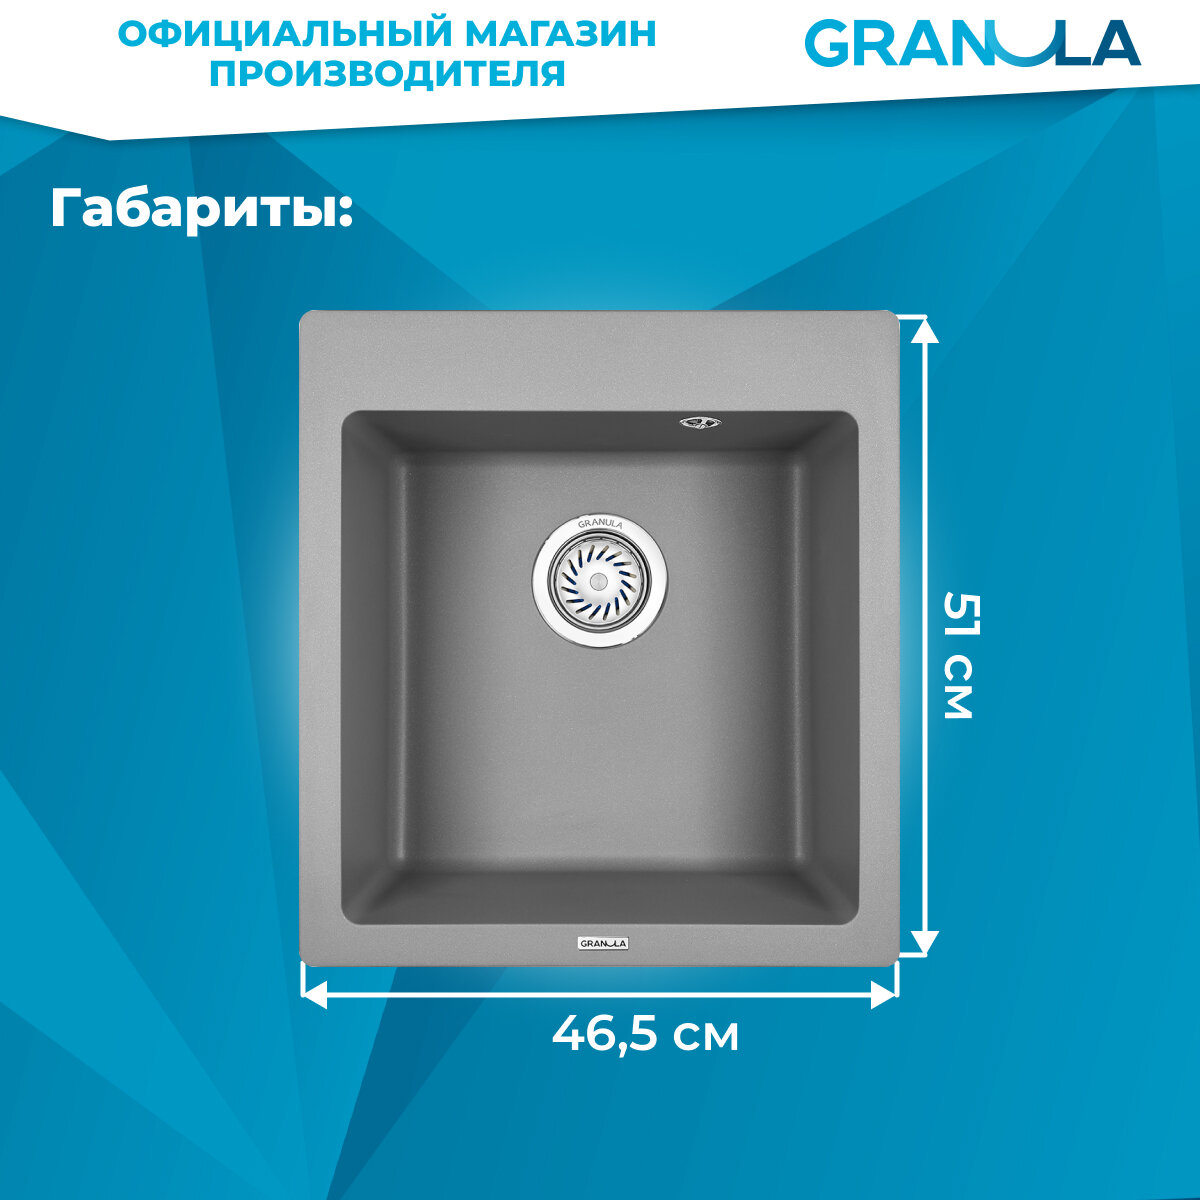 Мойка для кухни Granula 4651, алюминиум (серый), врезная, кварцевая, раковина для кухни